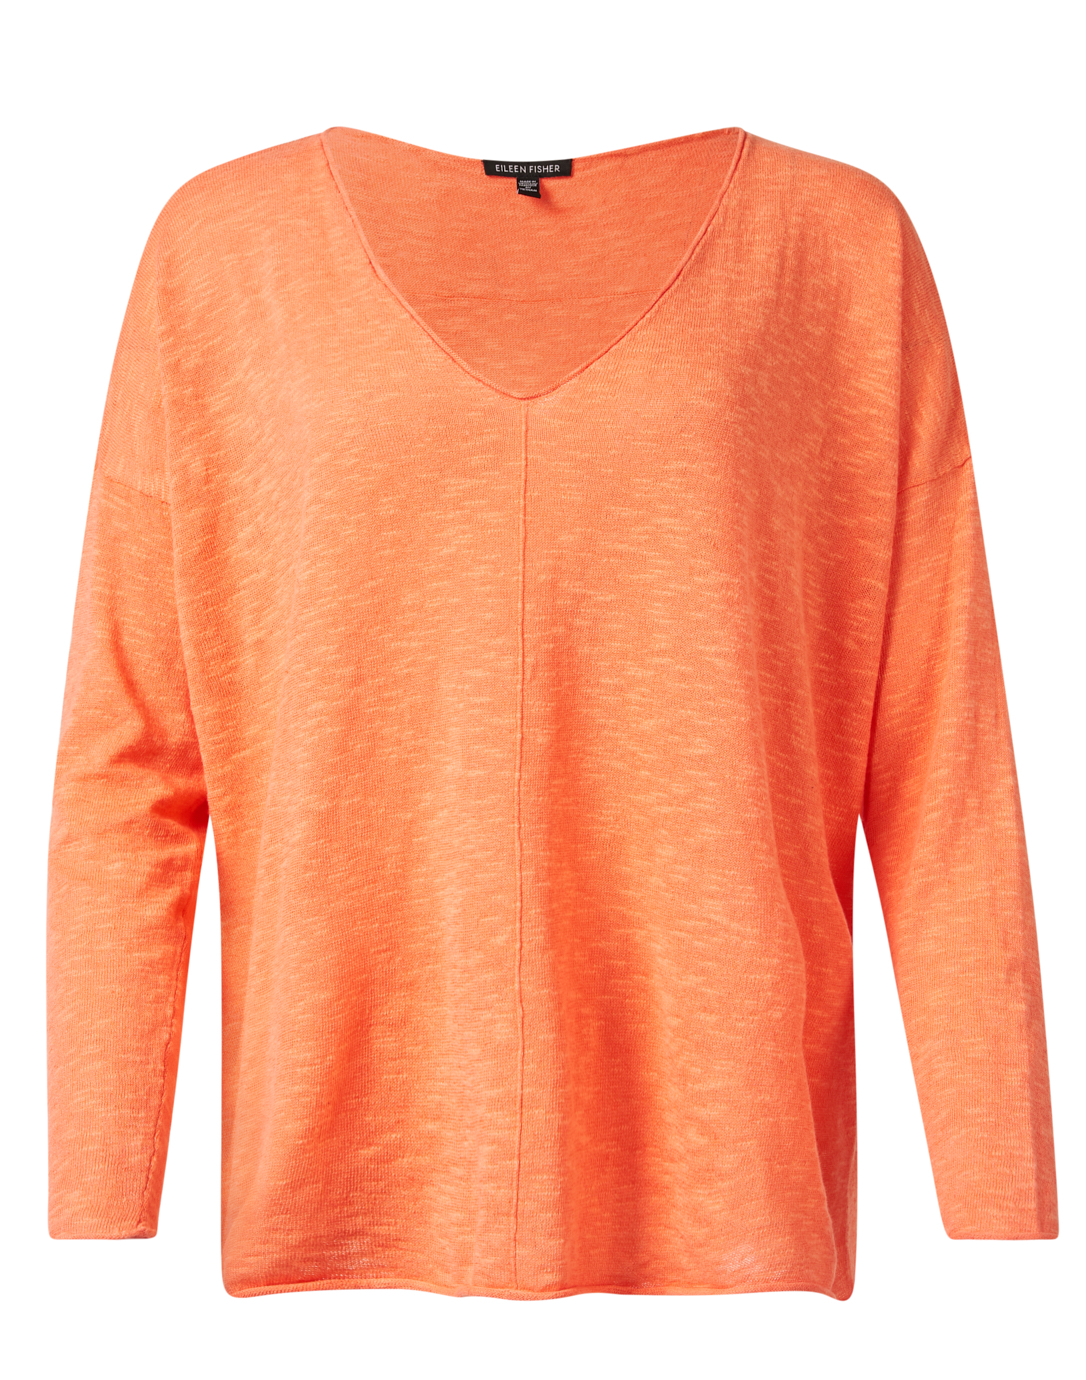 Orange Linen Cotton Top | Fisher Eileen